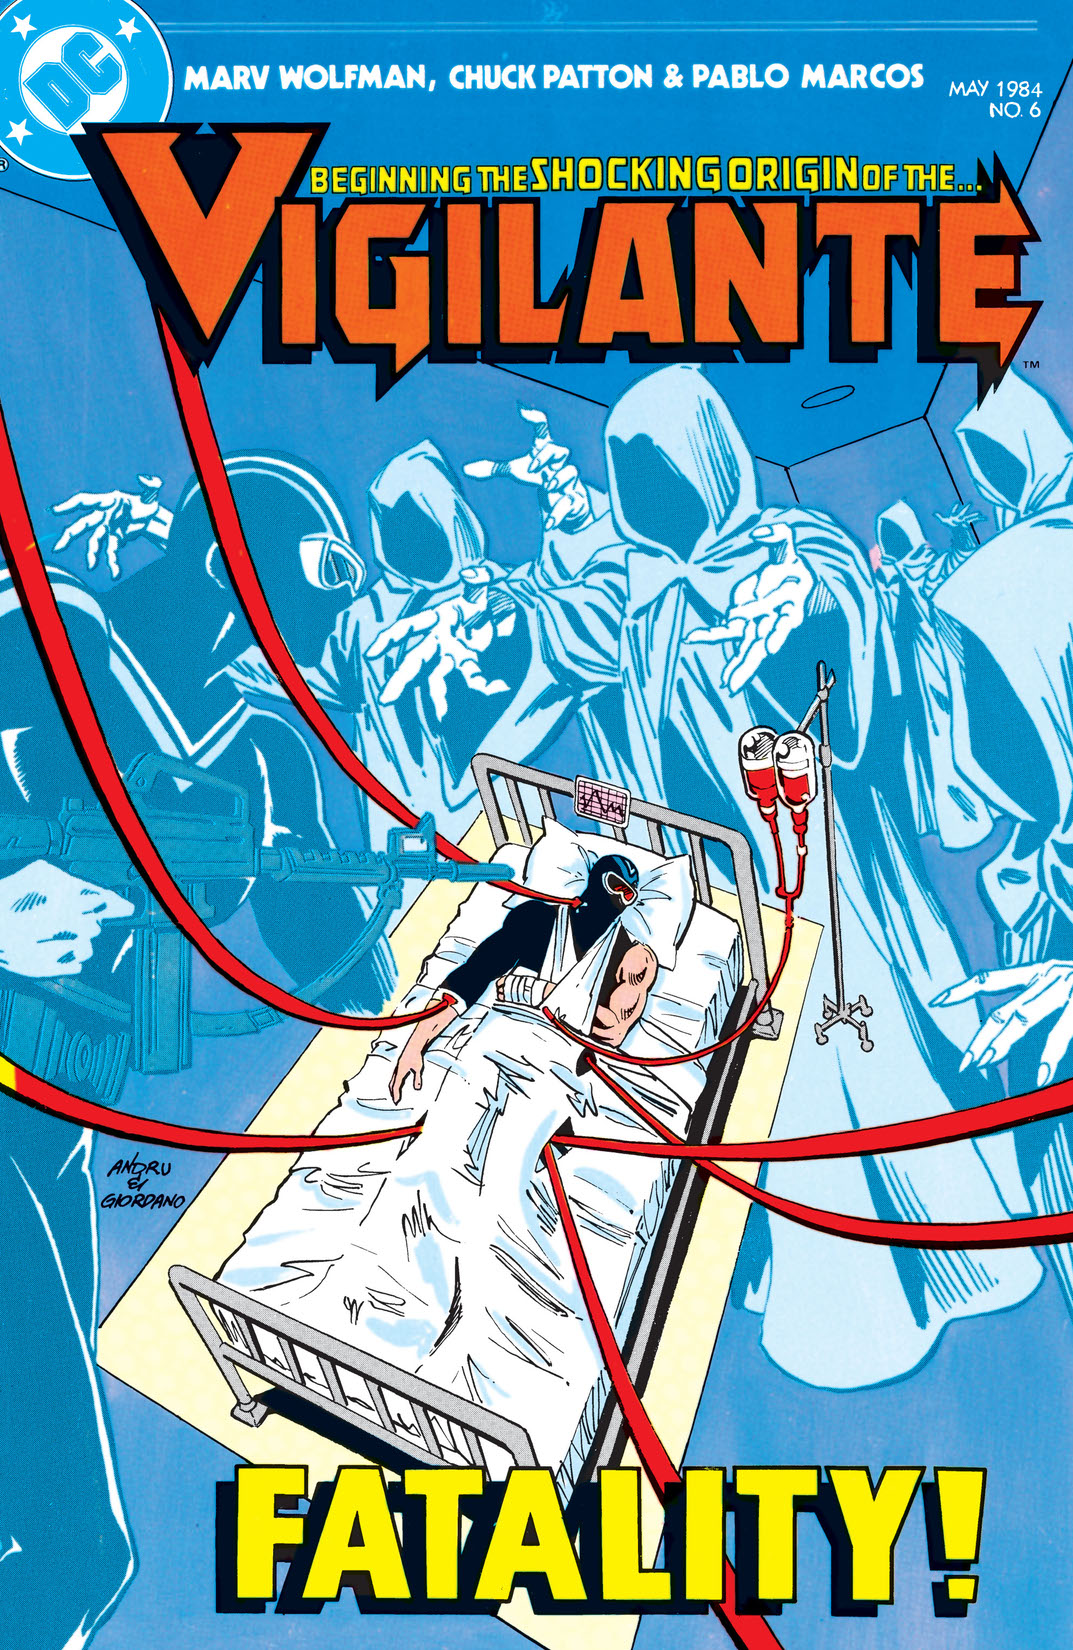 The Vigilante #6 preview images